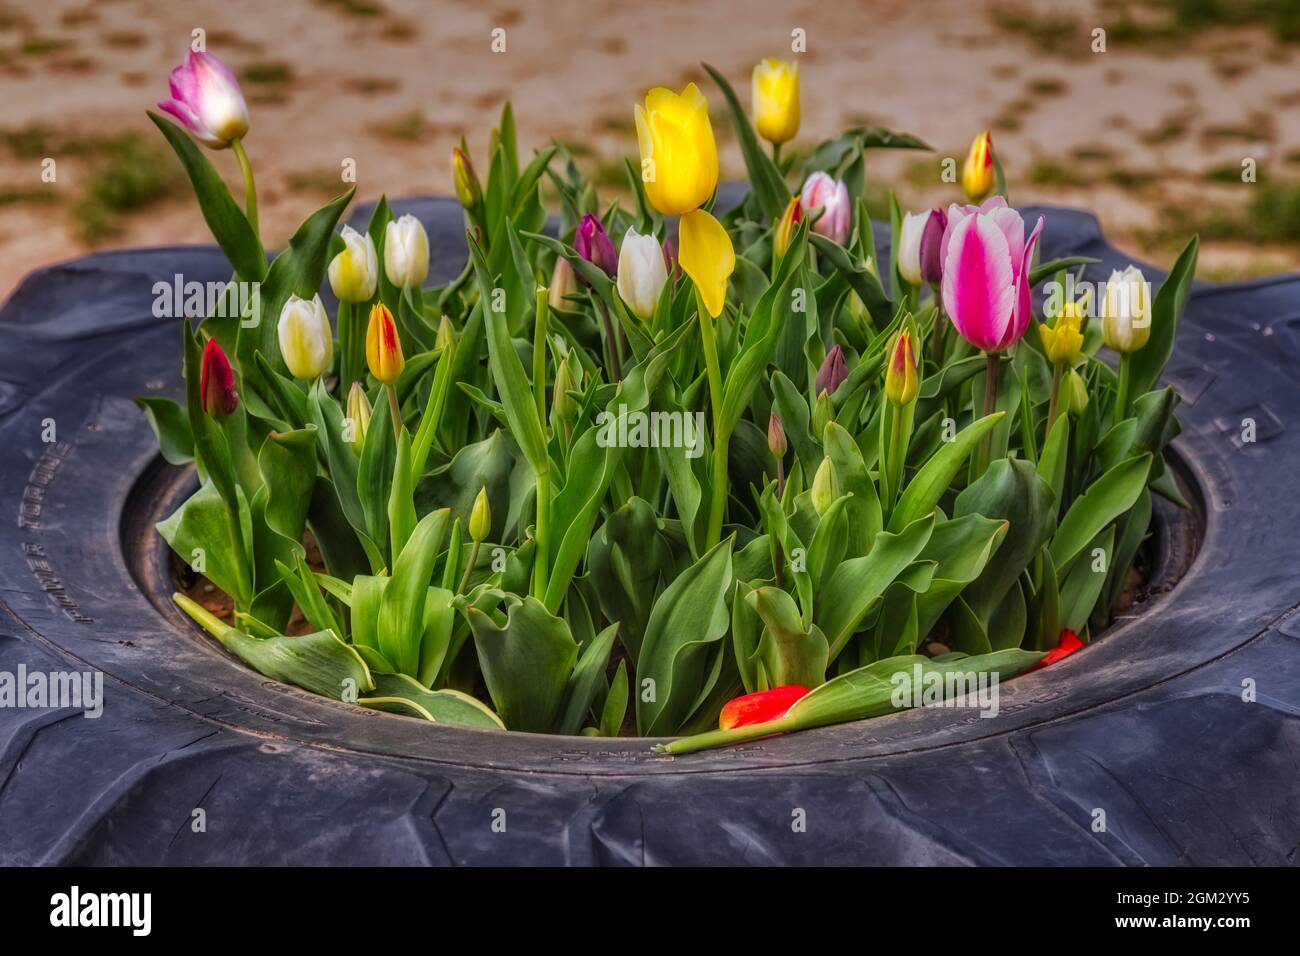 Tulpen in Einem Reifen - Eine Vielzahl von bunten Tulpen in einem Goodyear-Reifen verwendet die Farm als Pflanztopf. Sowohl in Farbe als auch in erhältlich Stockfoto